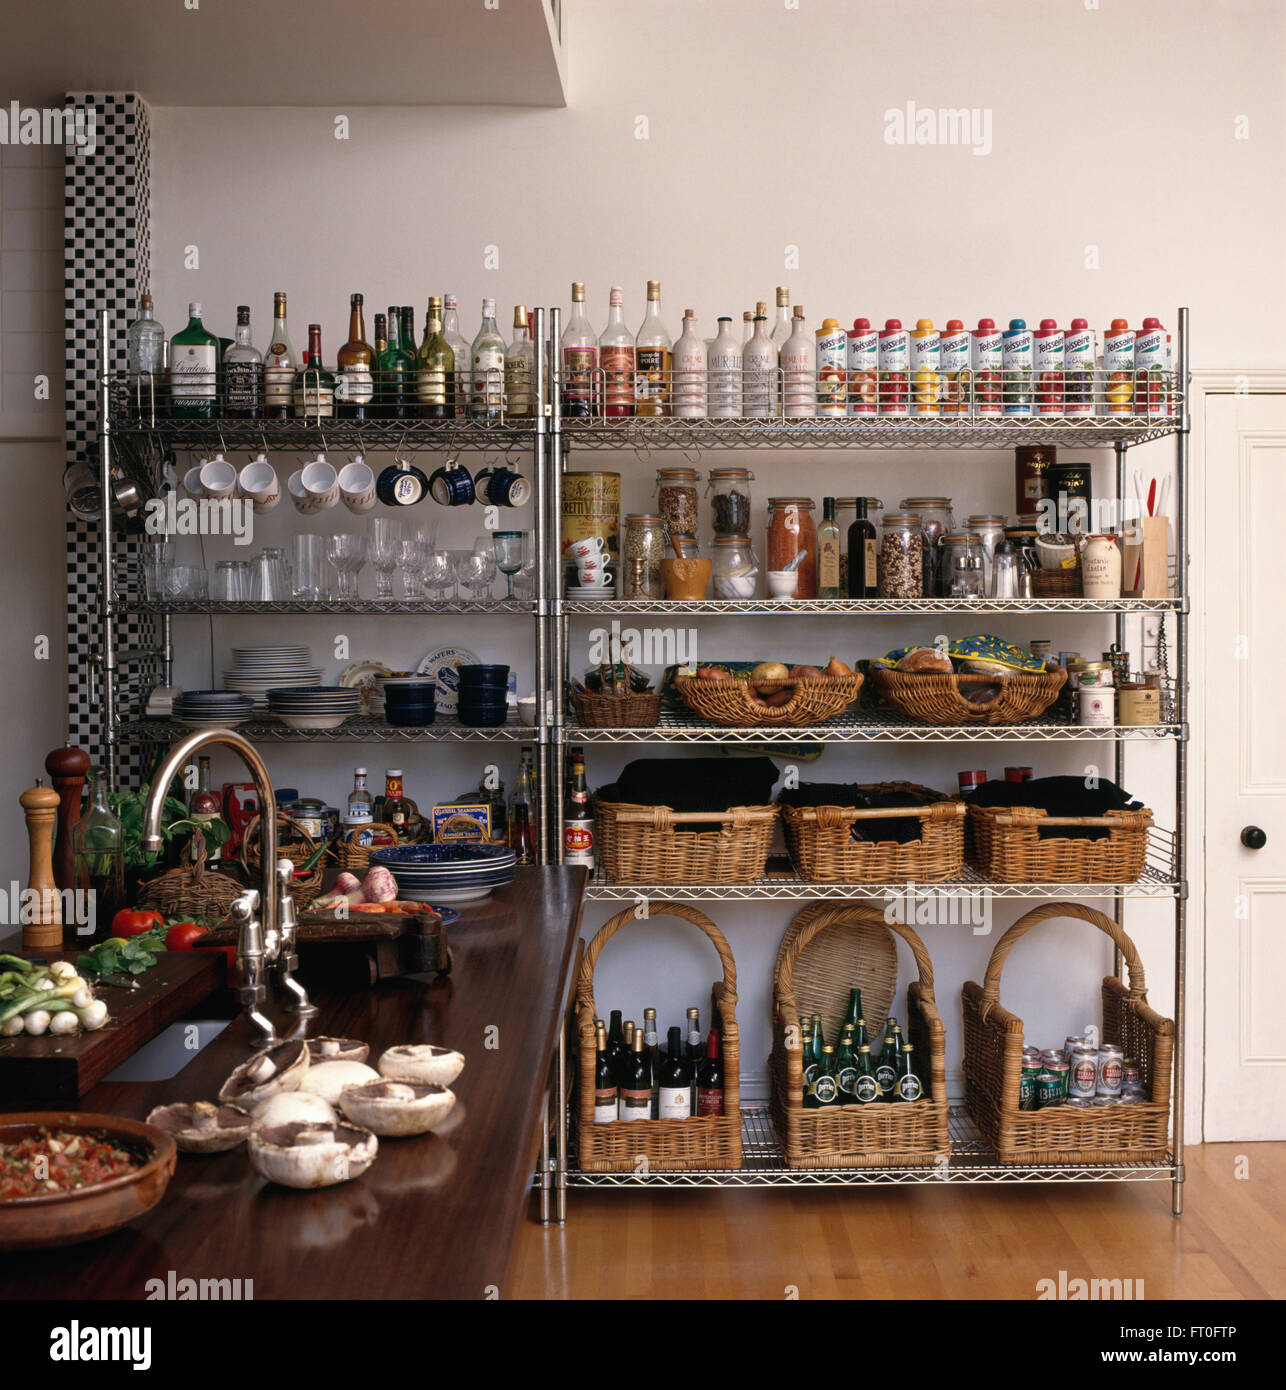 Aufbewahrung Körbe und Reihen von Flaschen auf Edelstahl Regale in modernen Küche Stockfoto